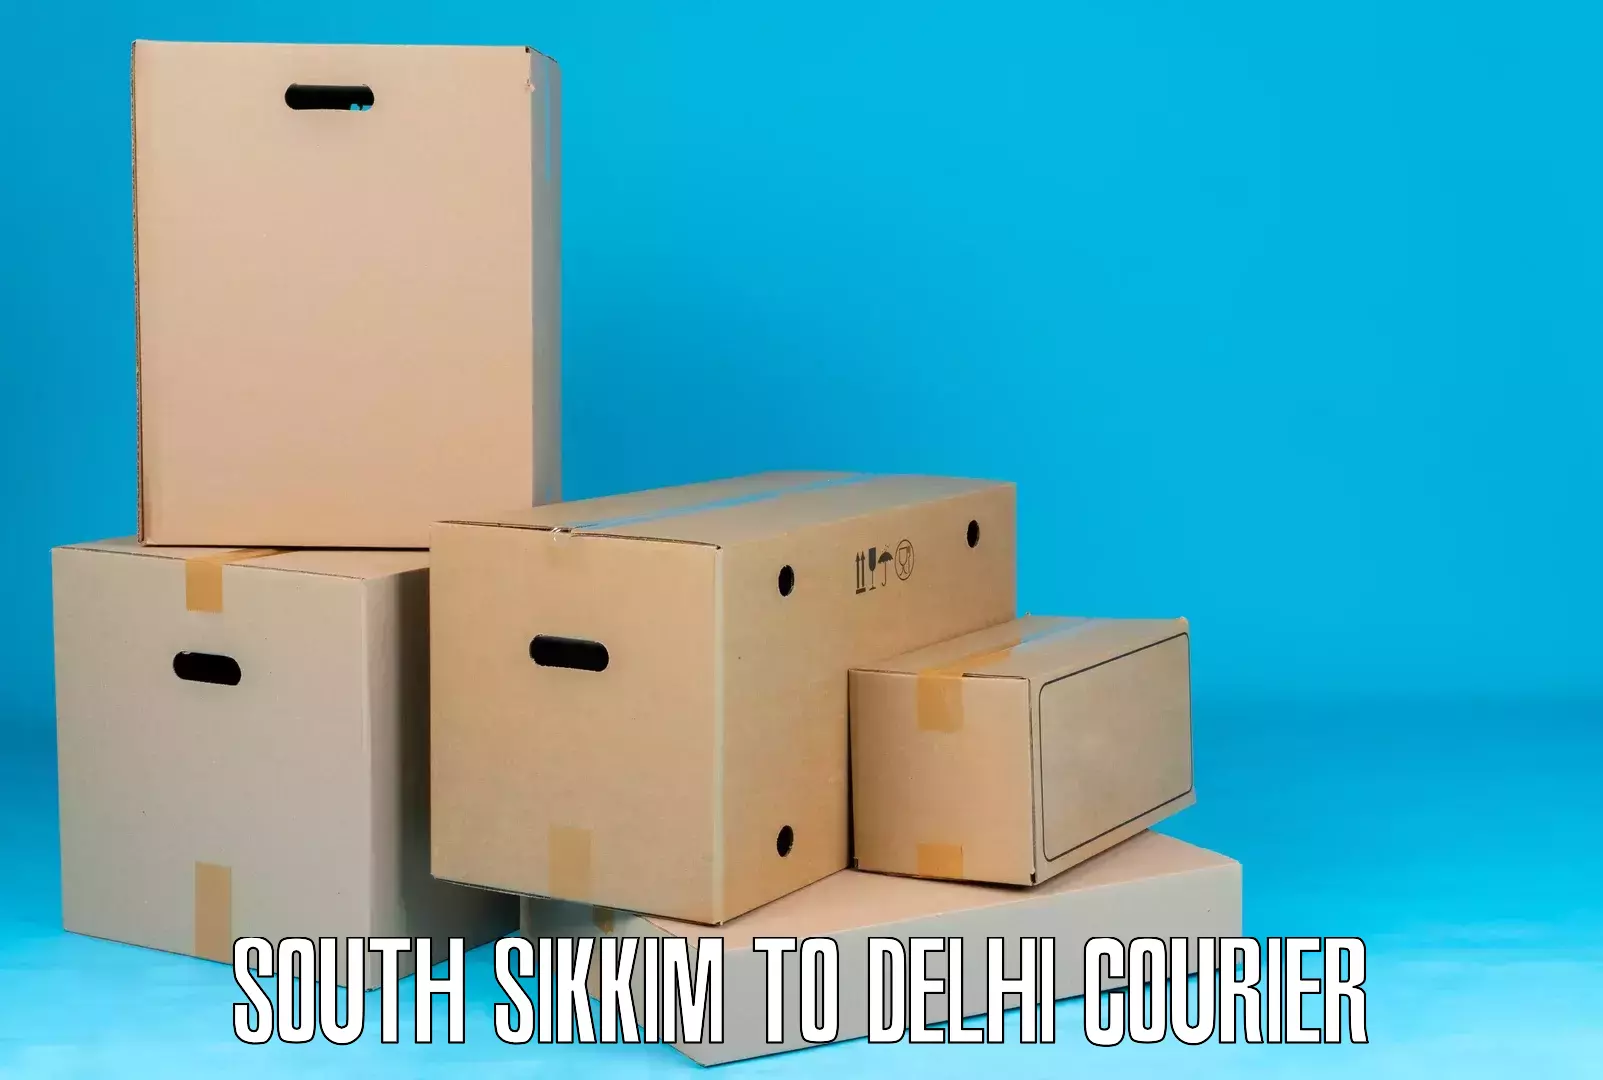 Subscription-based courier South Sikkim to Jamia Millia Islamia New Delhi